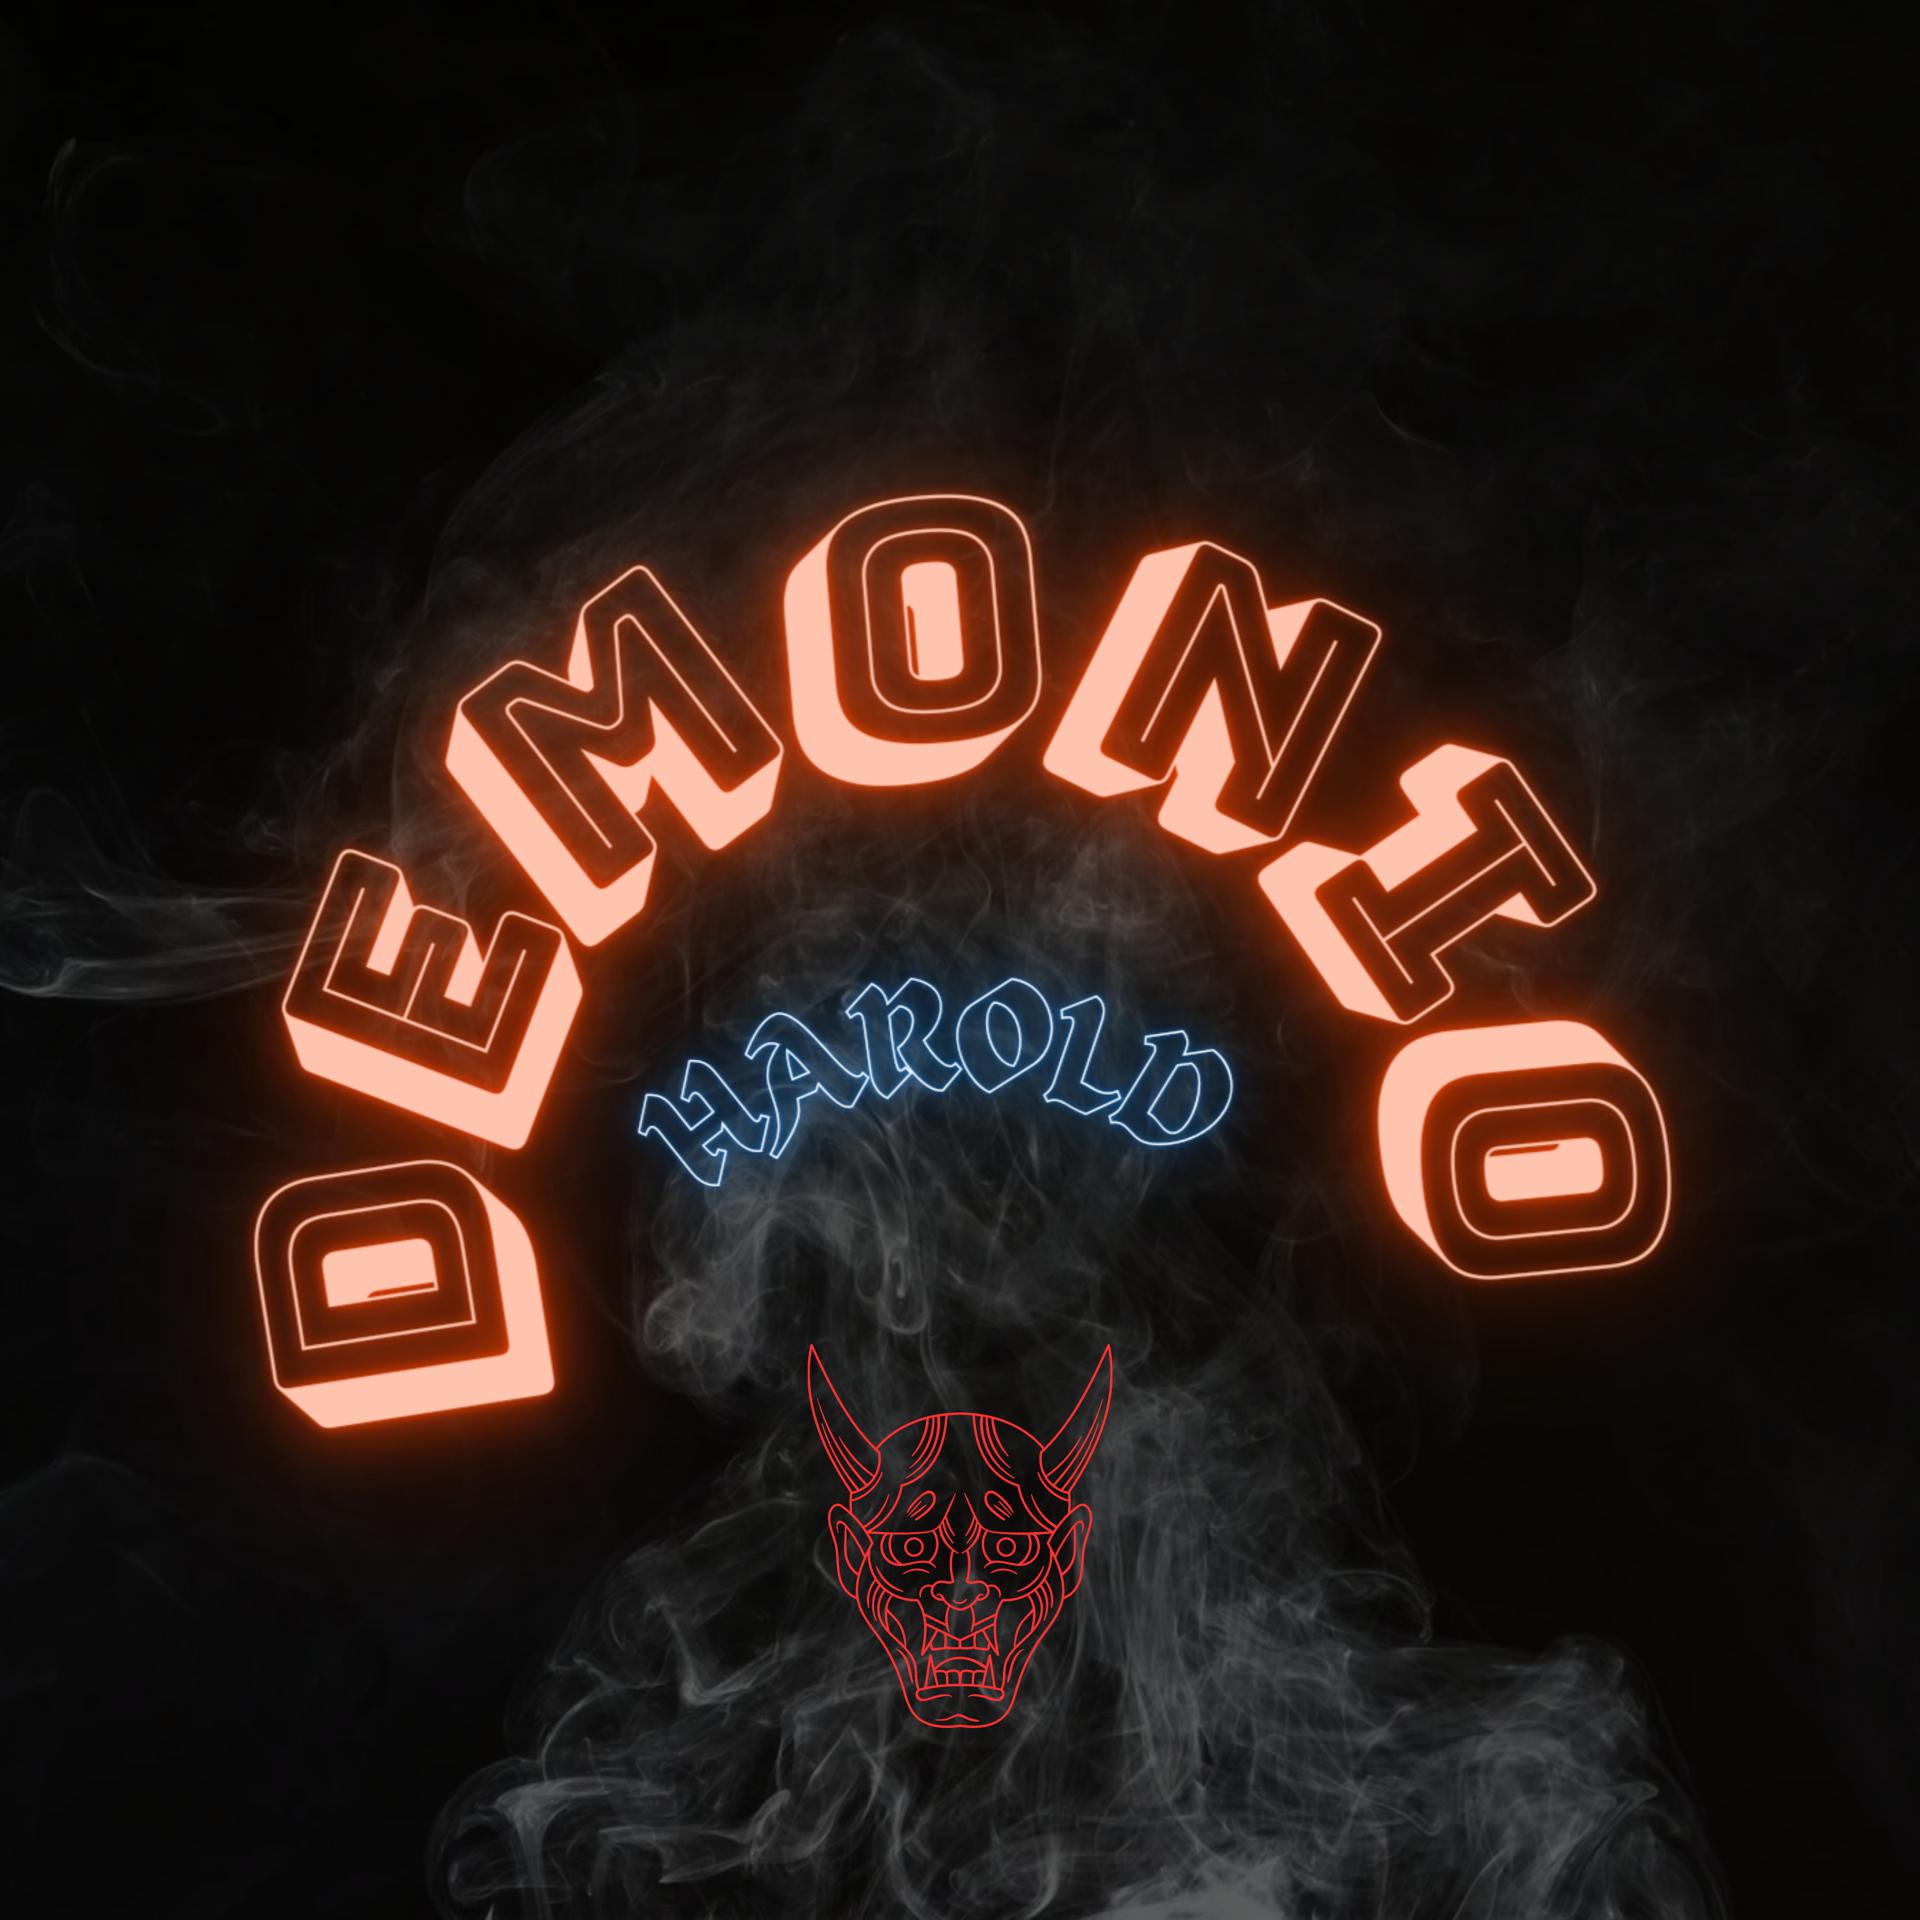 Постер альбома Demonio